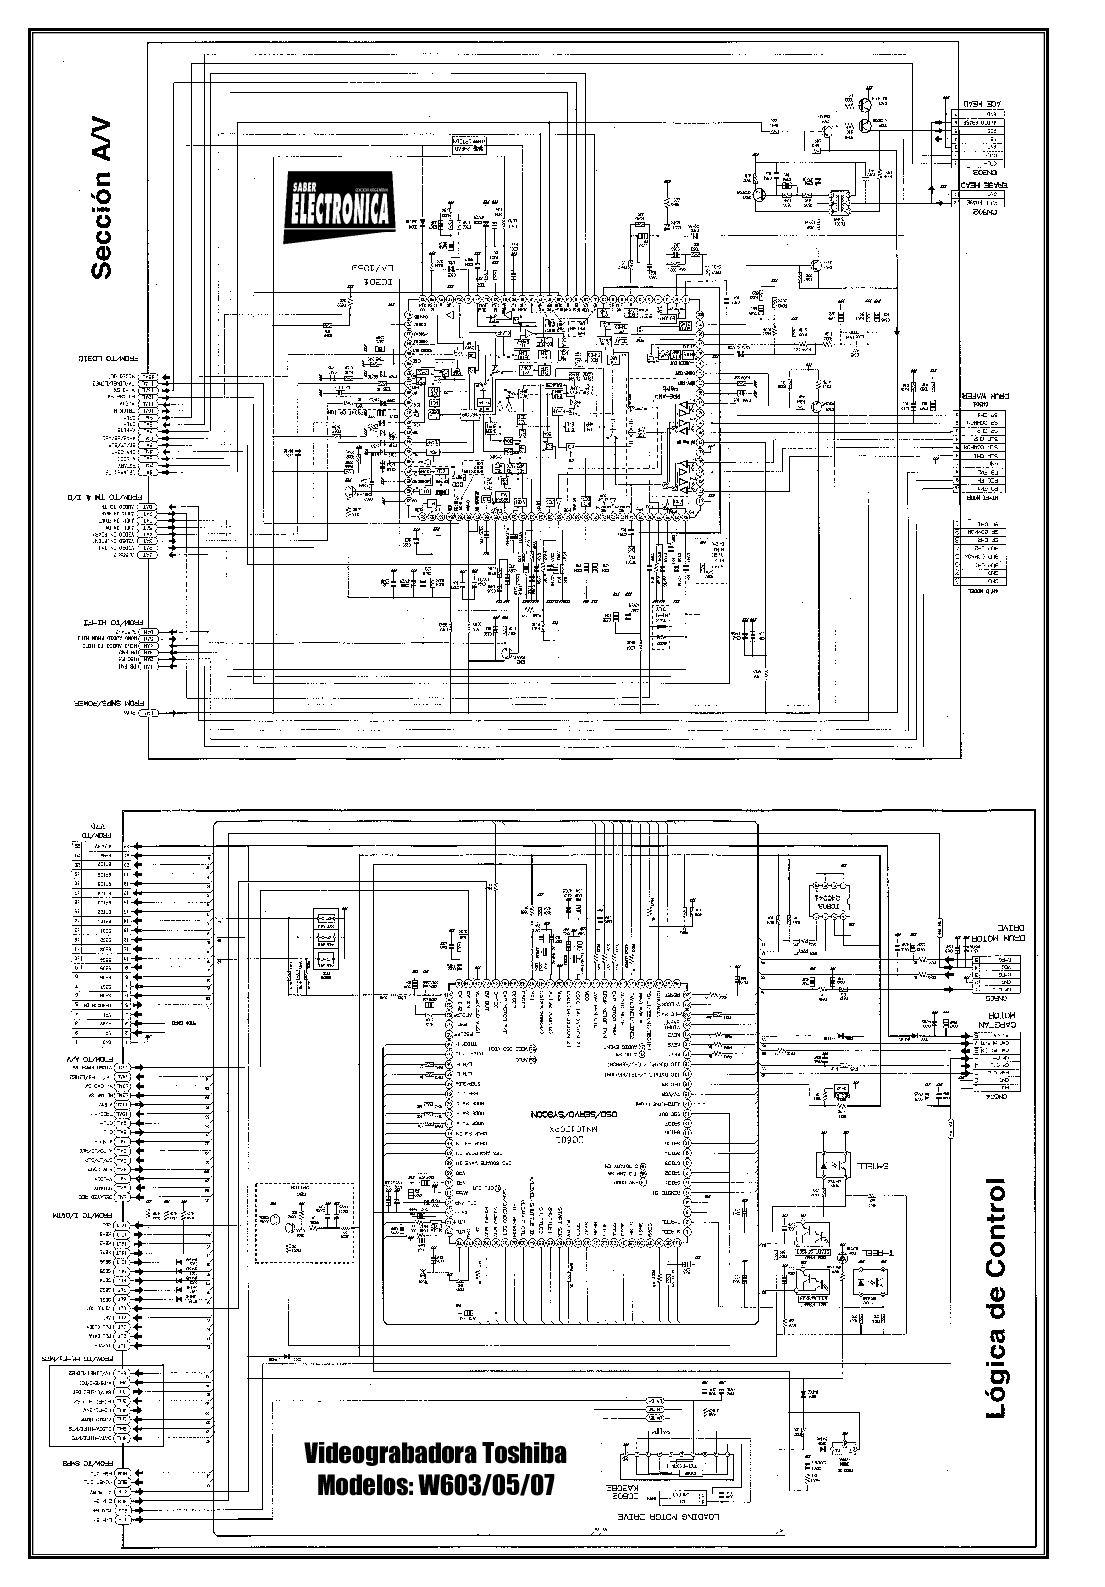 videogra Toshiba W603 05 07 pdf videogra Toshiba W603 05 07 pdf